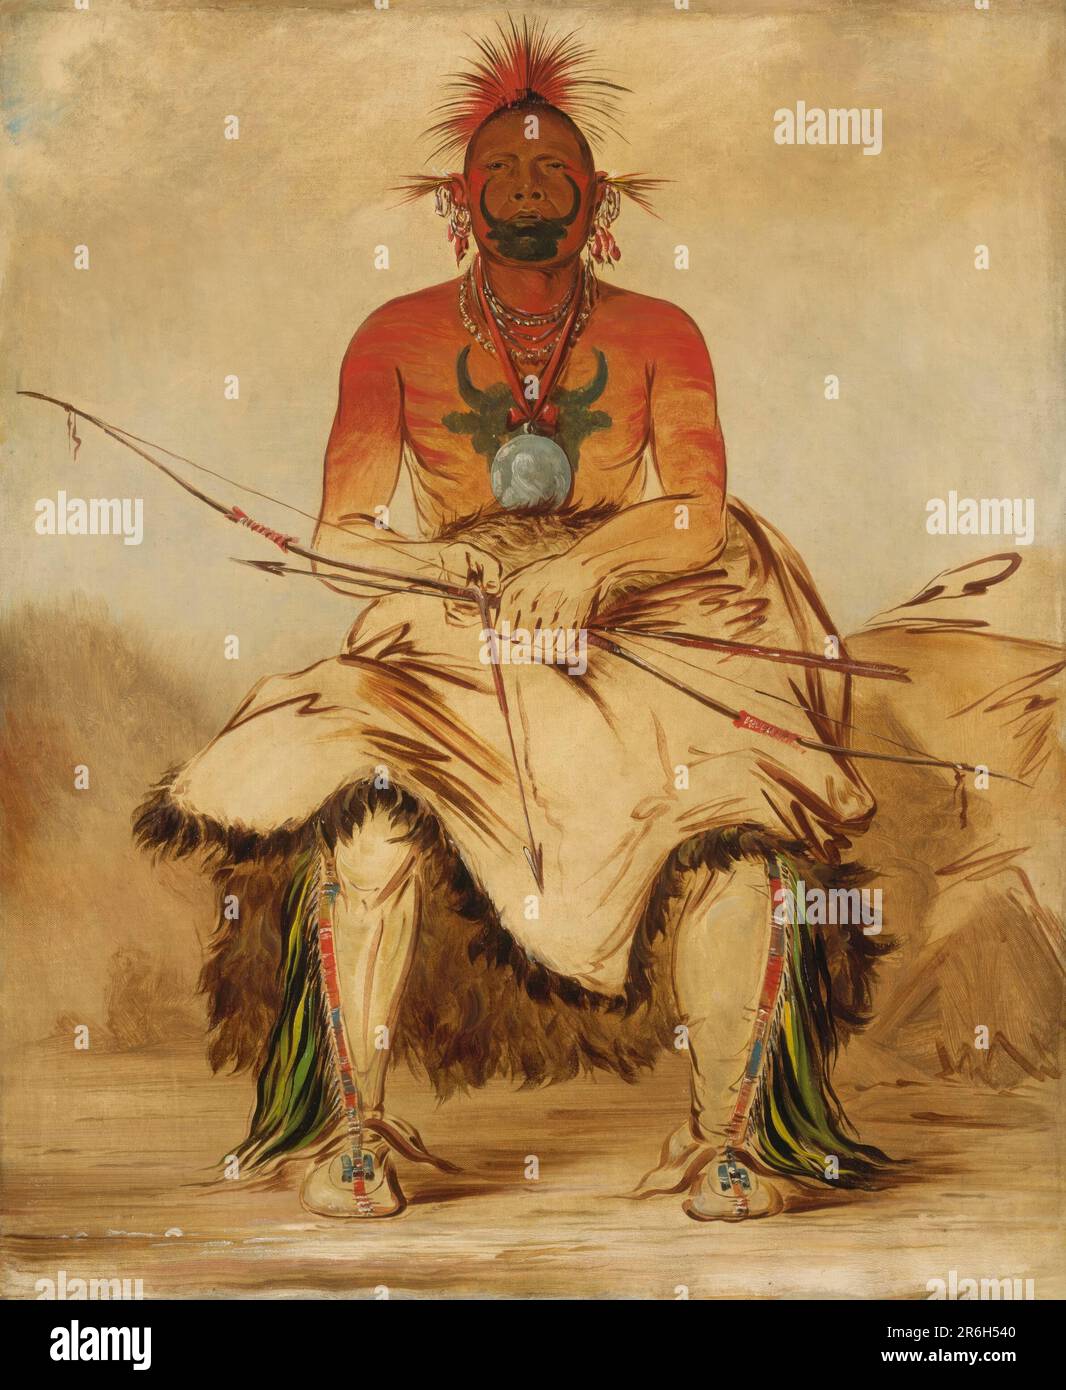 La-dóo-ke-a, Buffalo Bull, ein großer Pawnee-Krieger. Öl auf Segeltuch. Datum: 1832. Museum: Smithsonian American Art Museum. Stockfoto